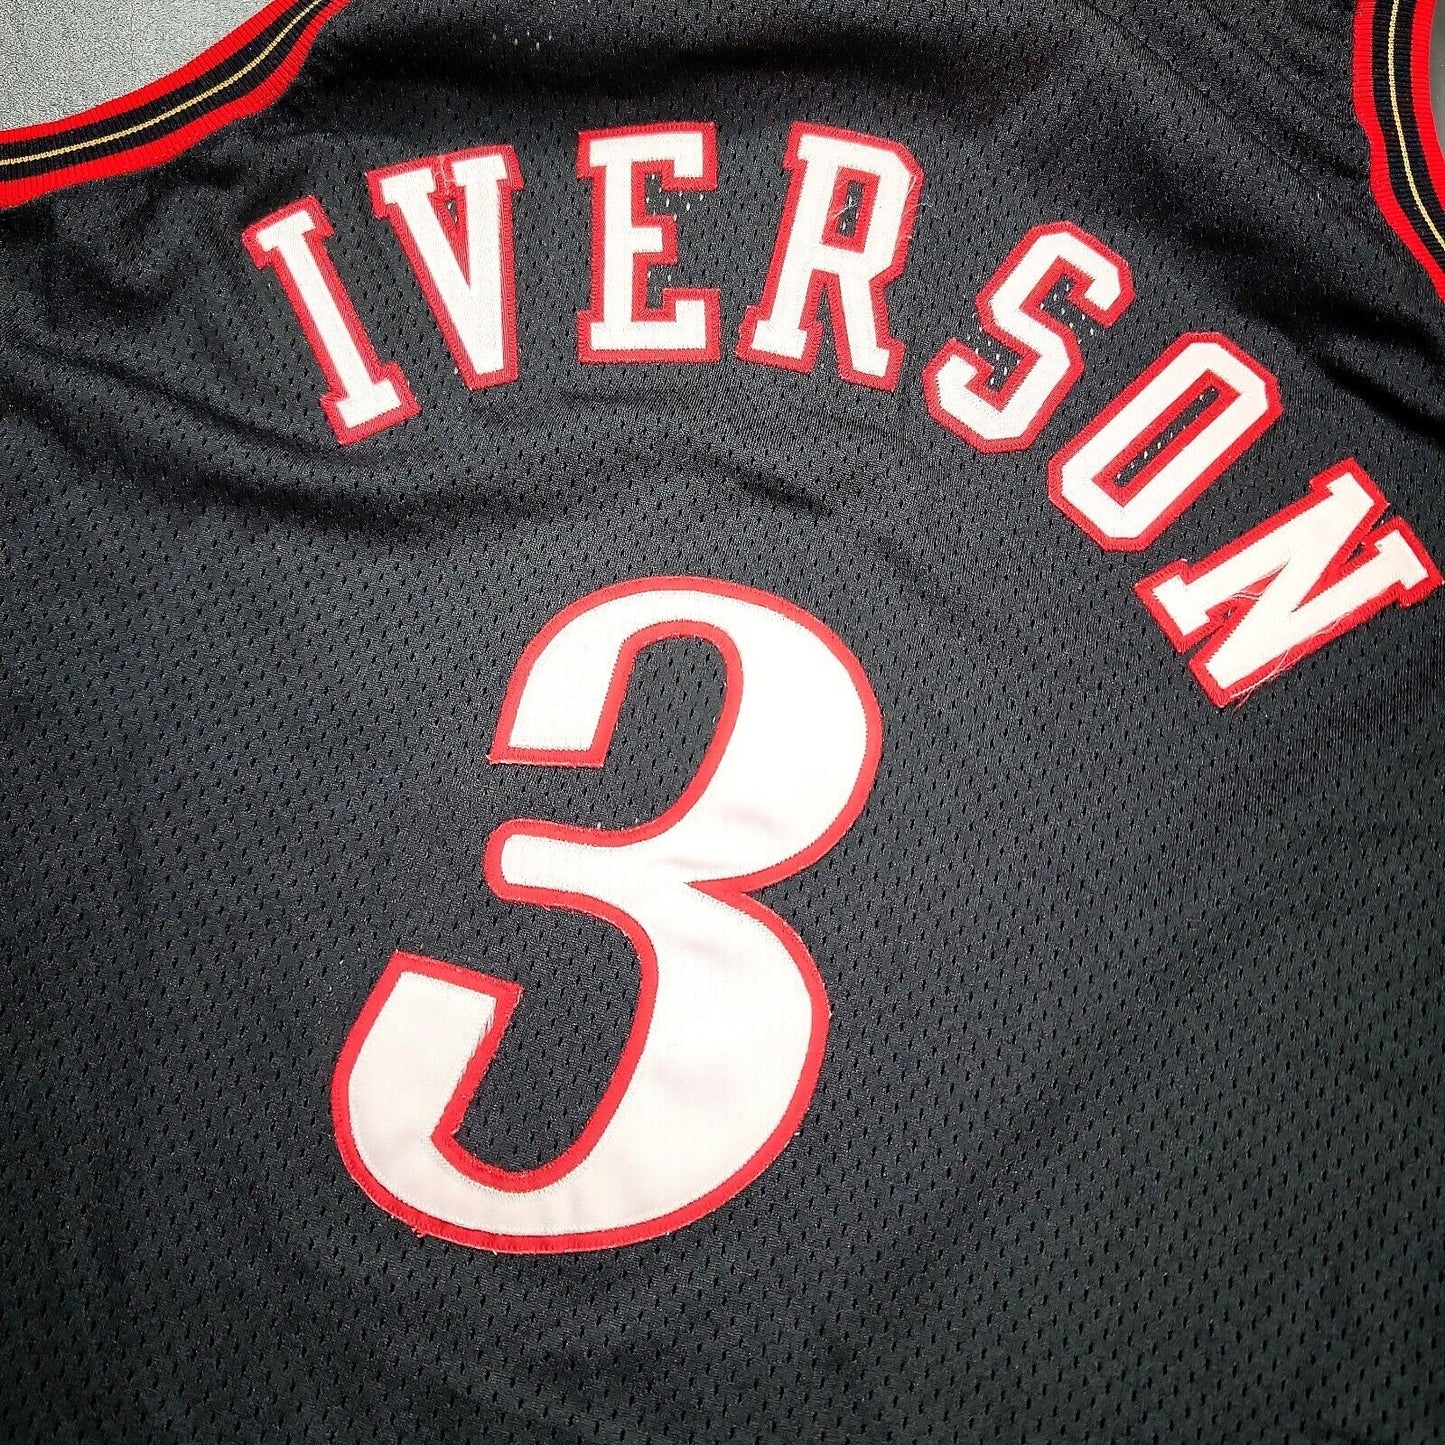 100% Authentic Allen Iverson Vintage Champion 76ers Jersey Size 44 L - pro cut